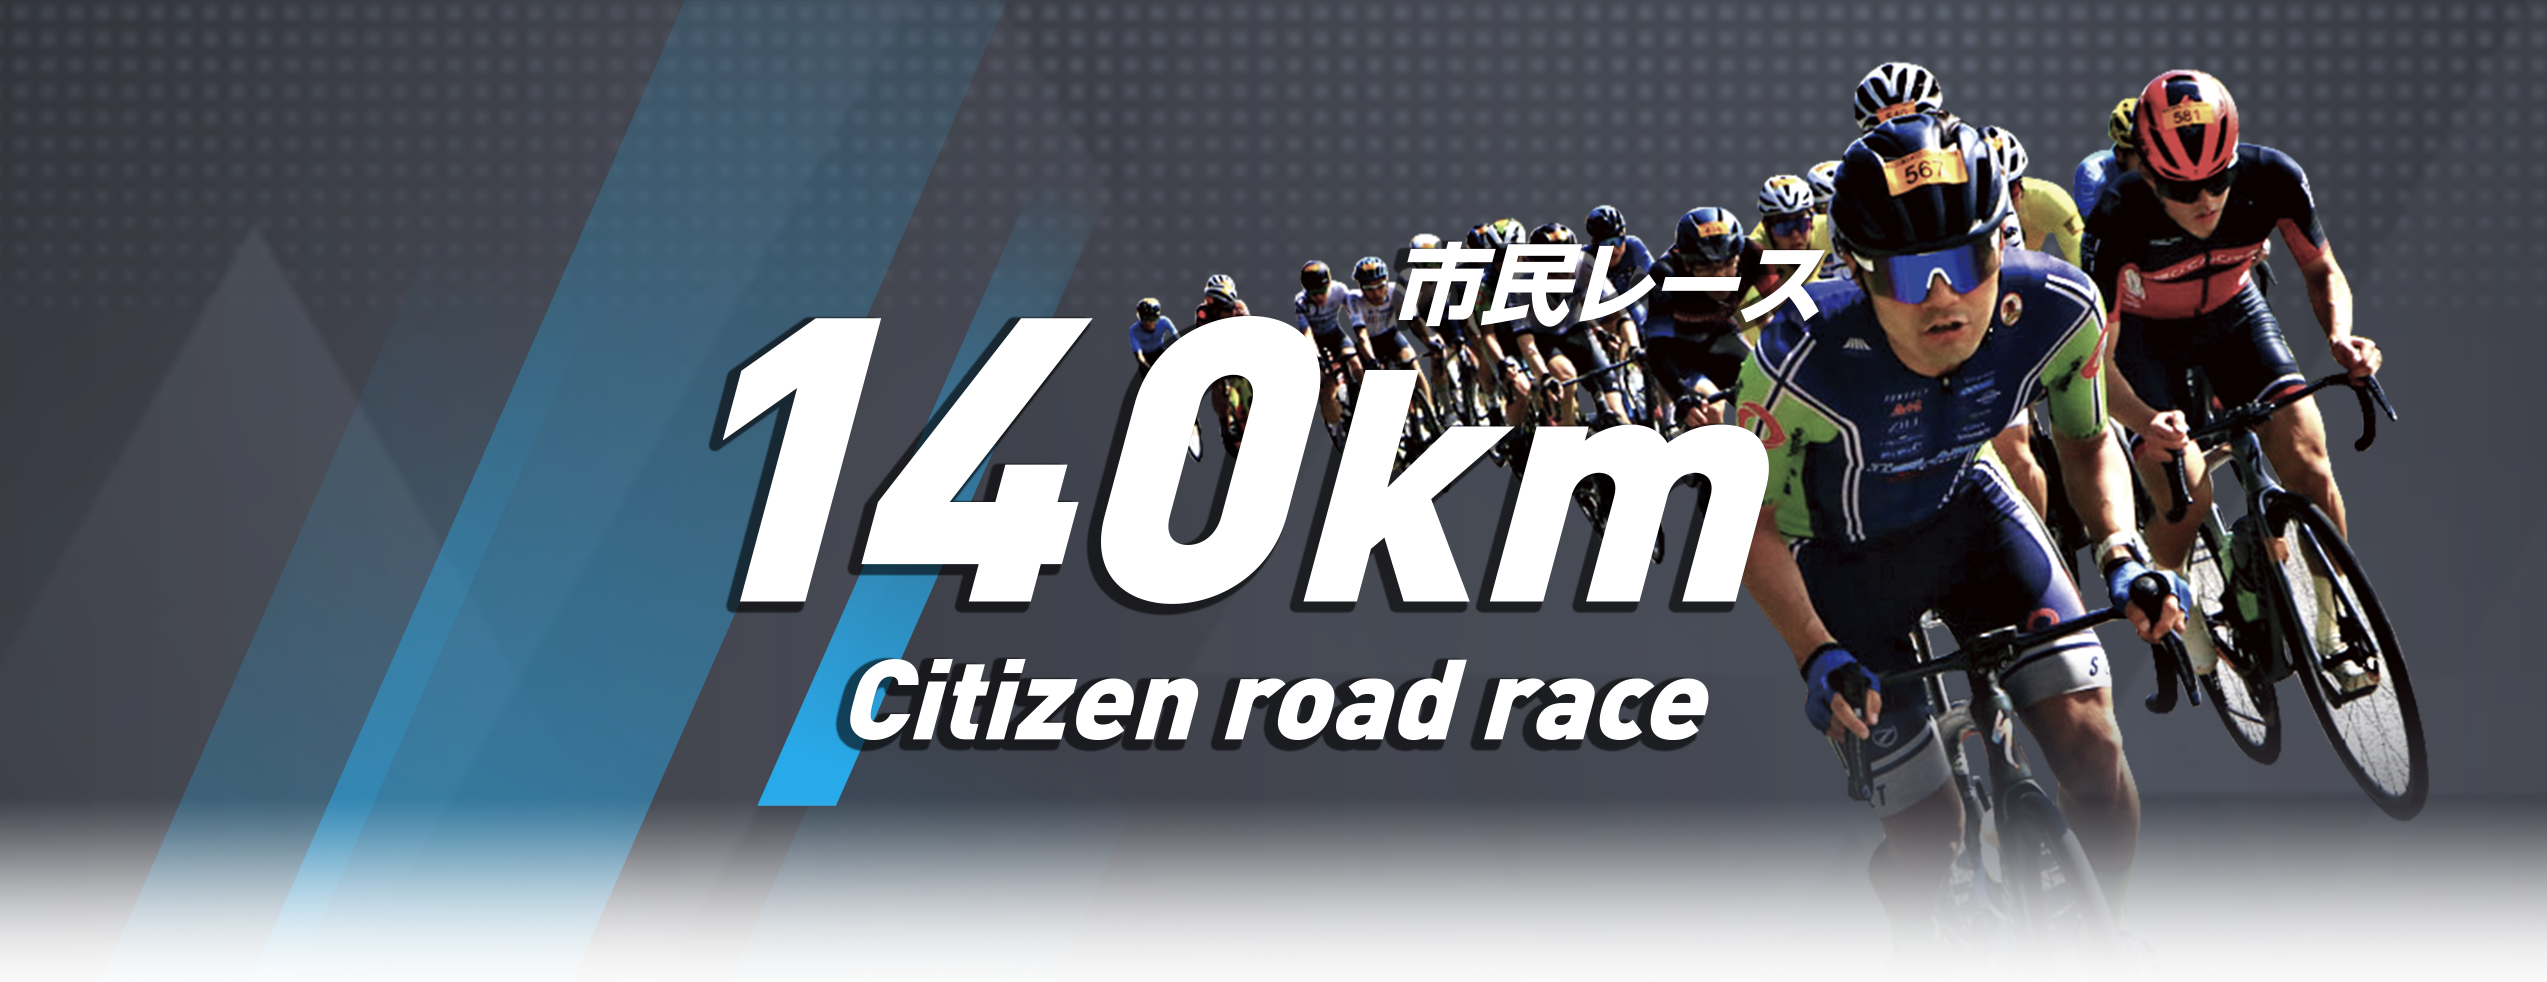 市民レース 140km